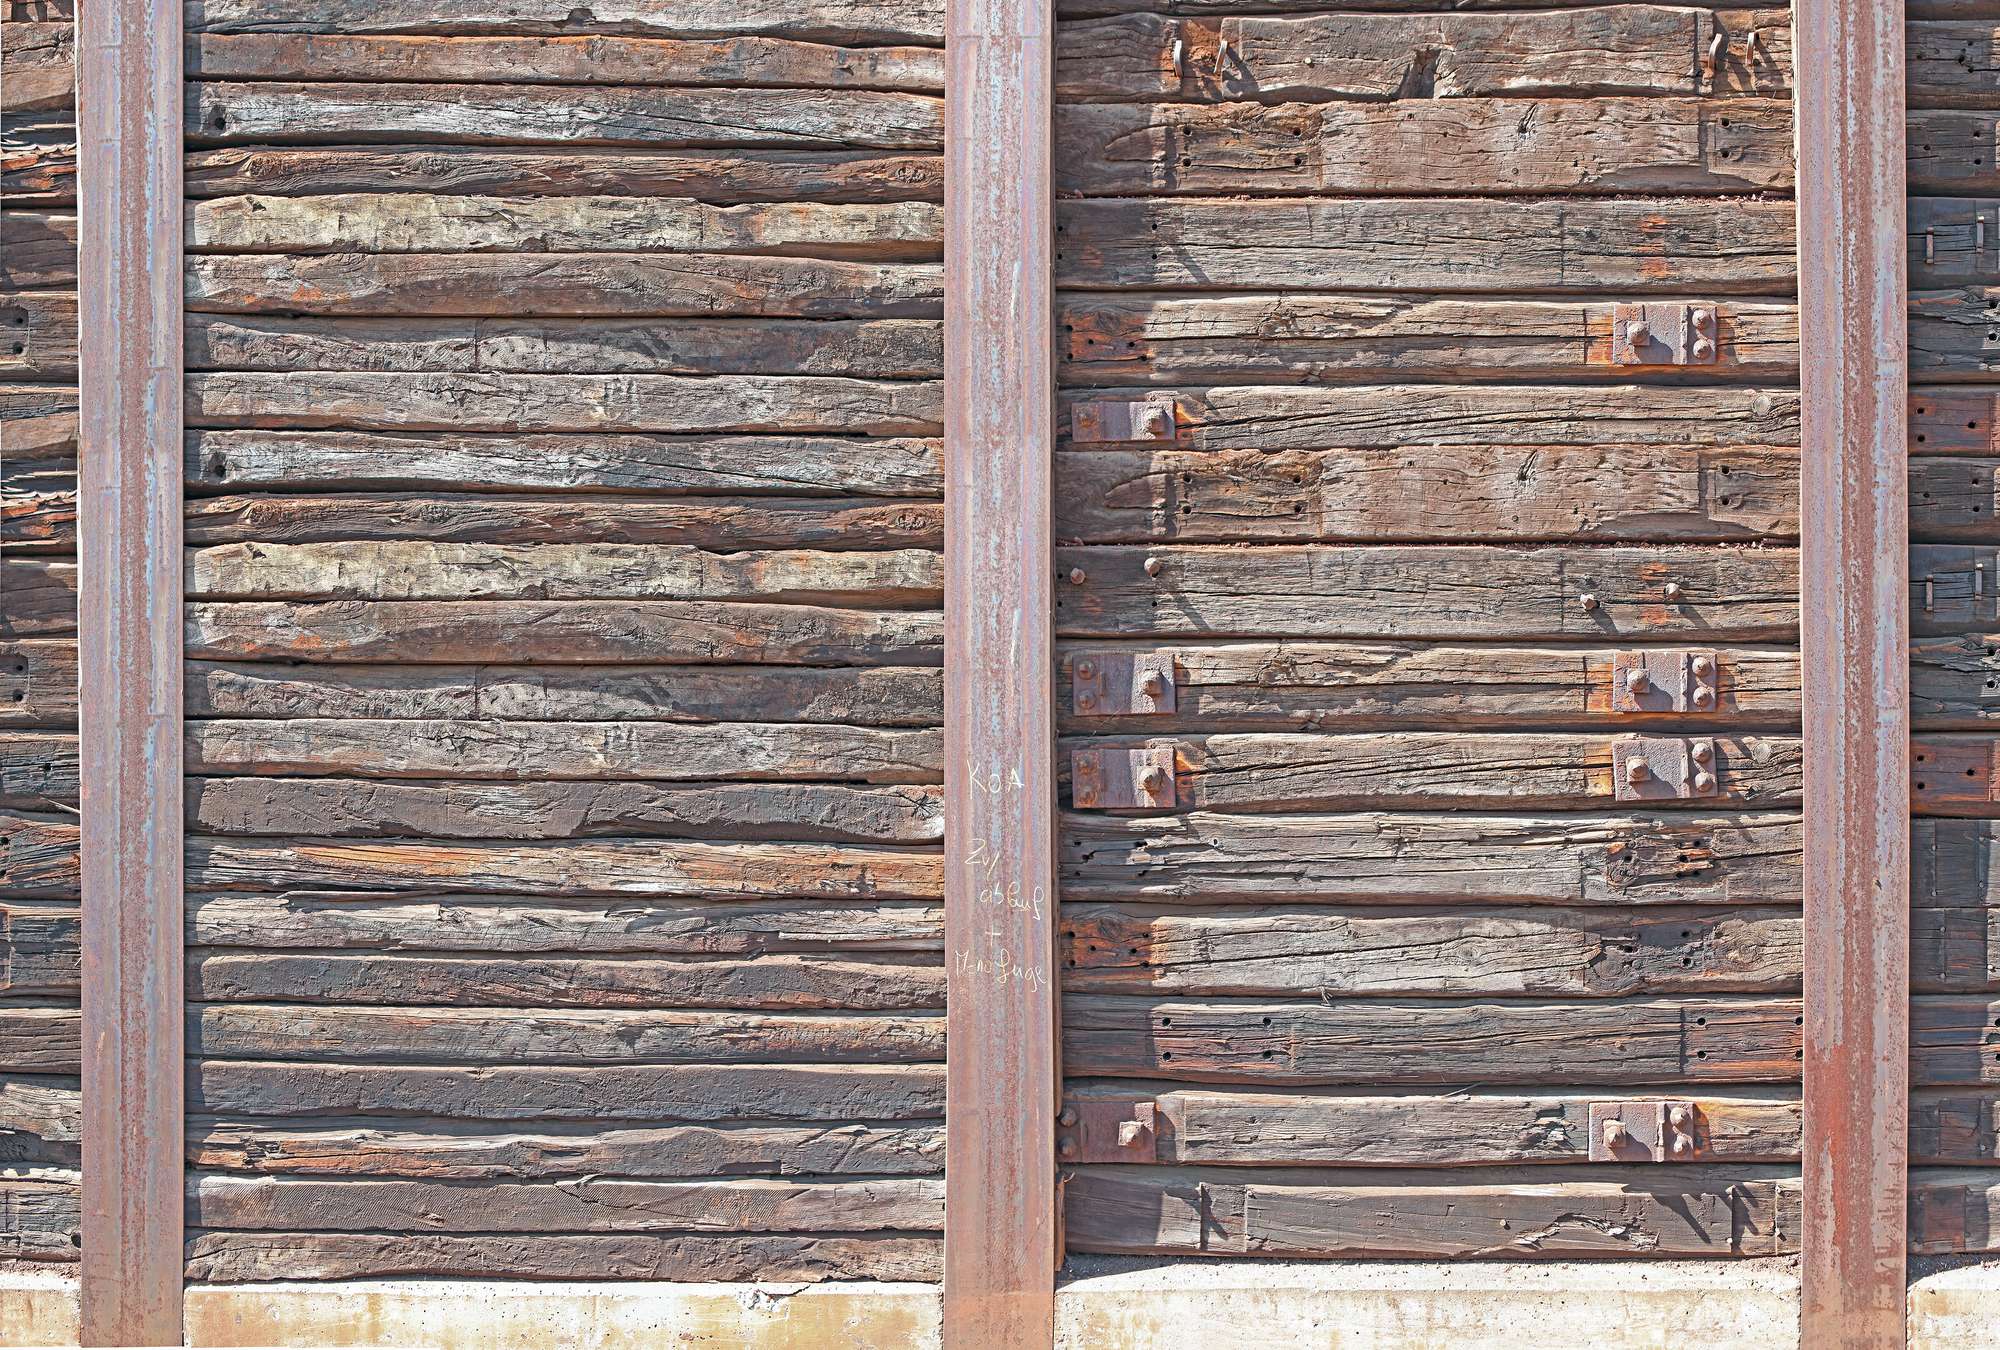             Papel pintado con tablones de madera rústica entre vigas de acero
        